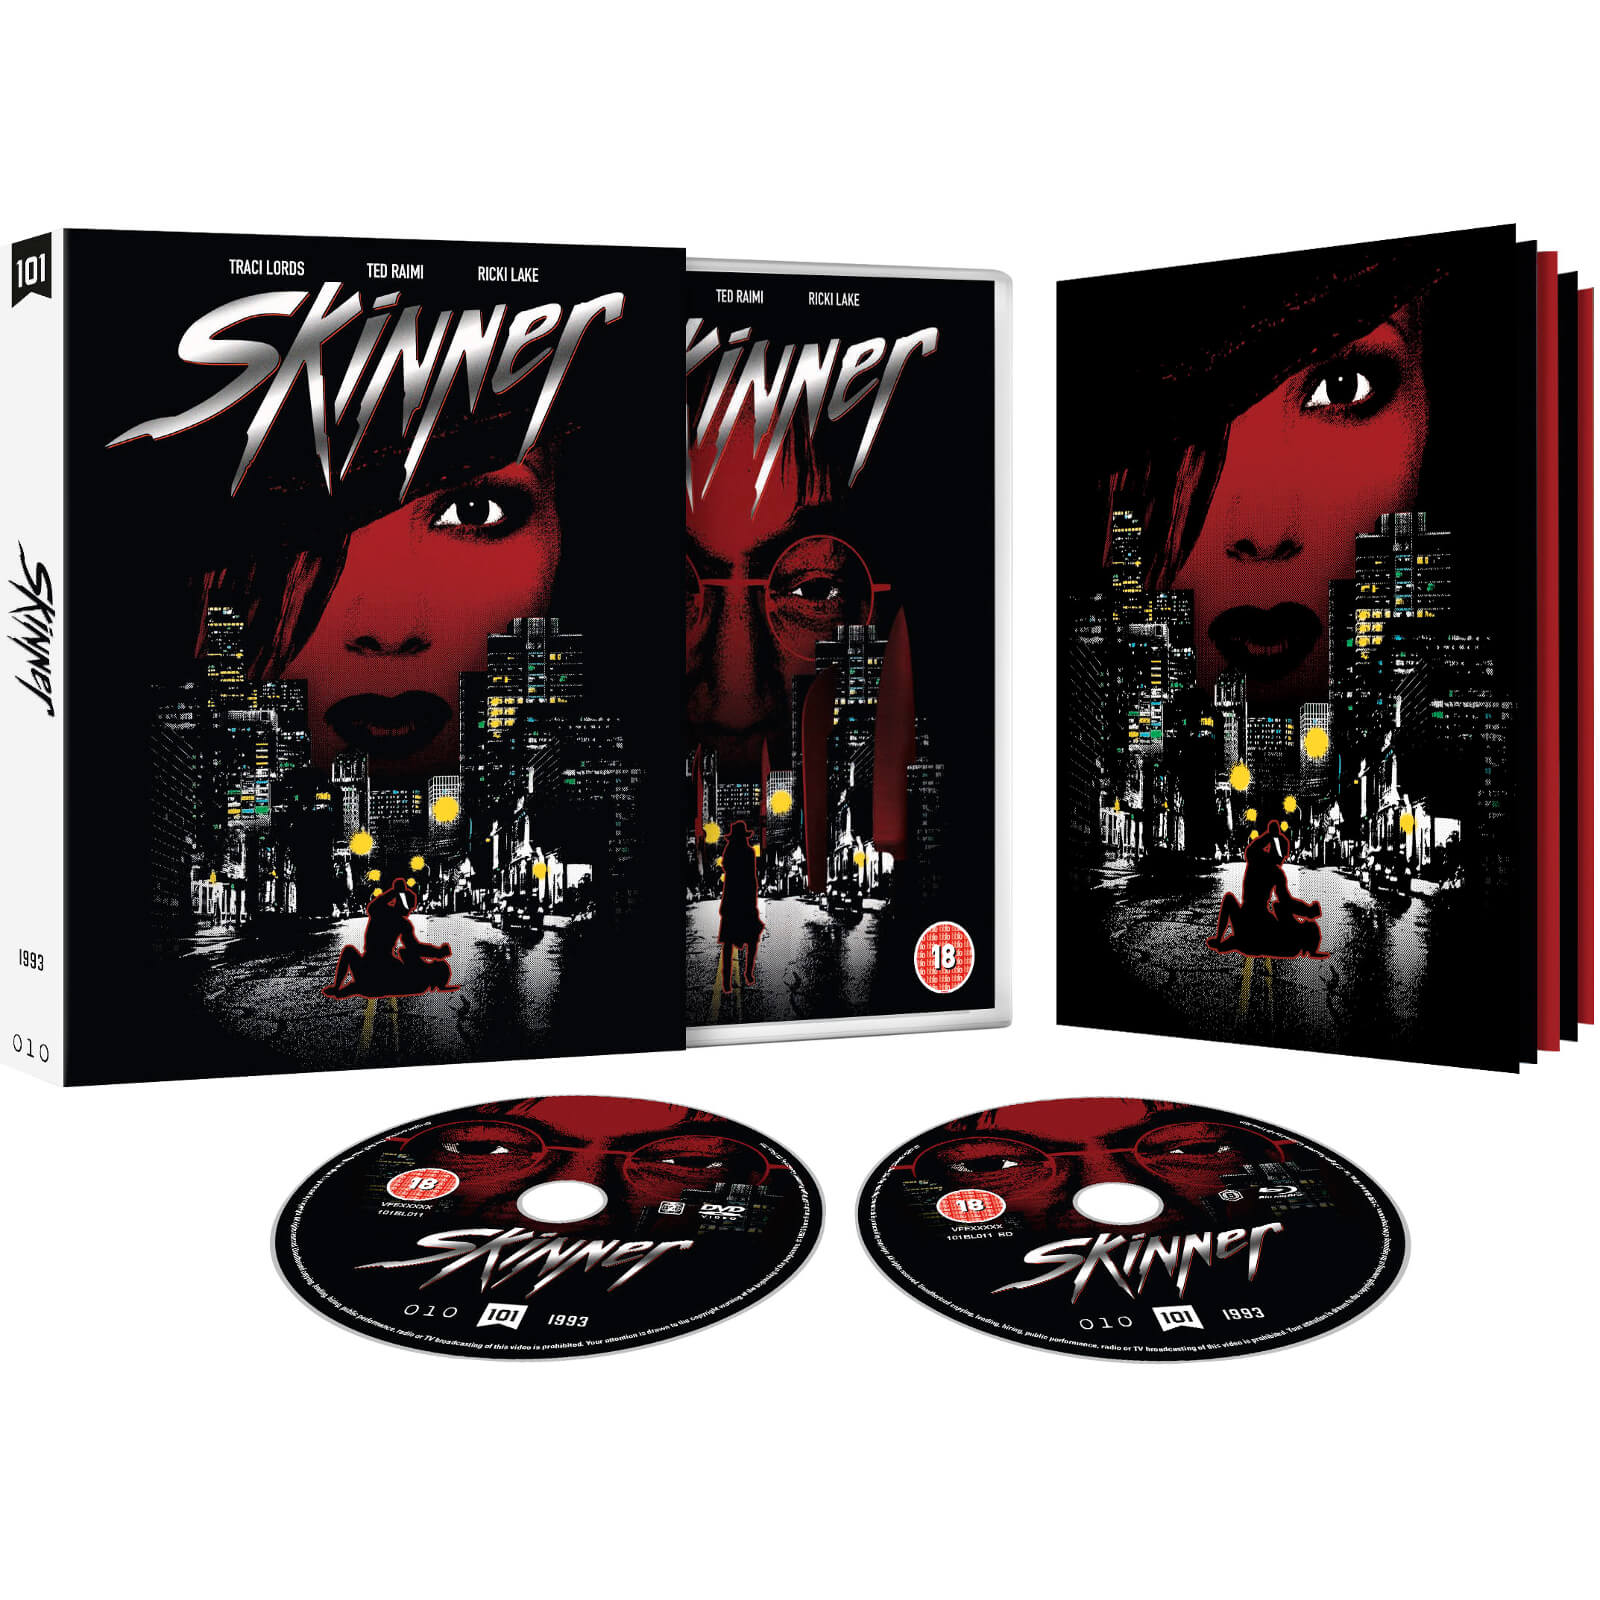 Skinner - Limitierte Auflage von 101 Films